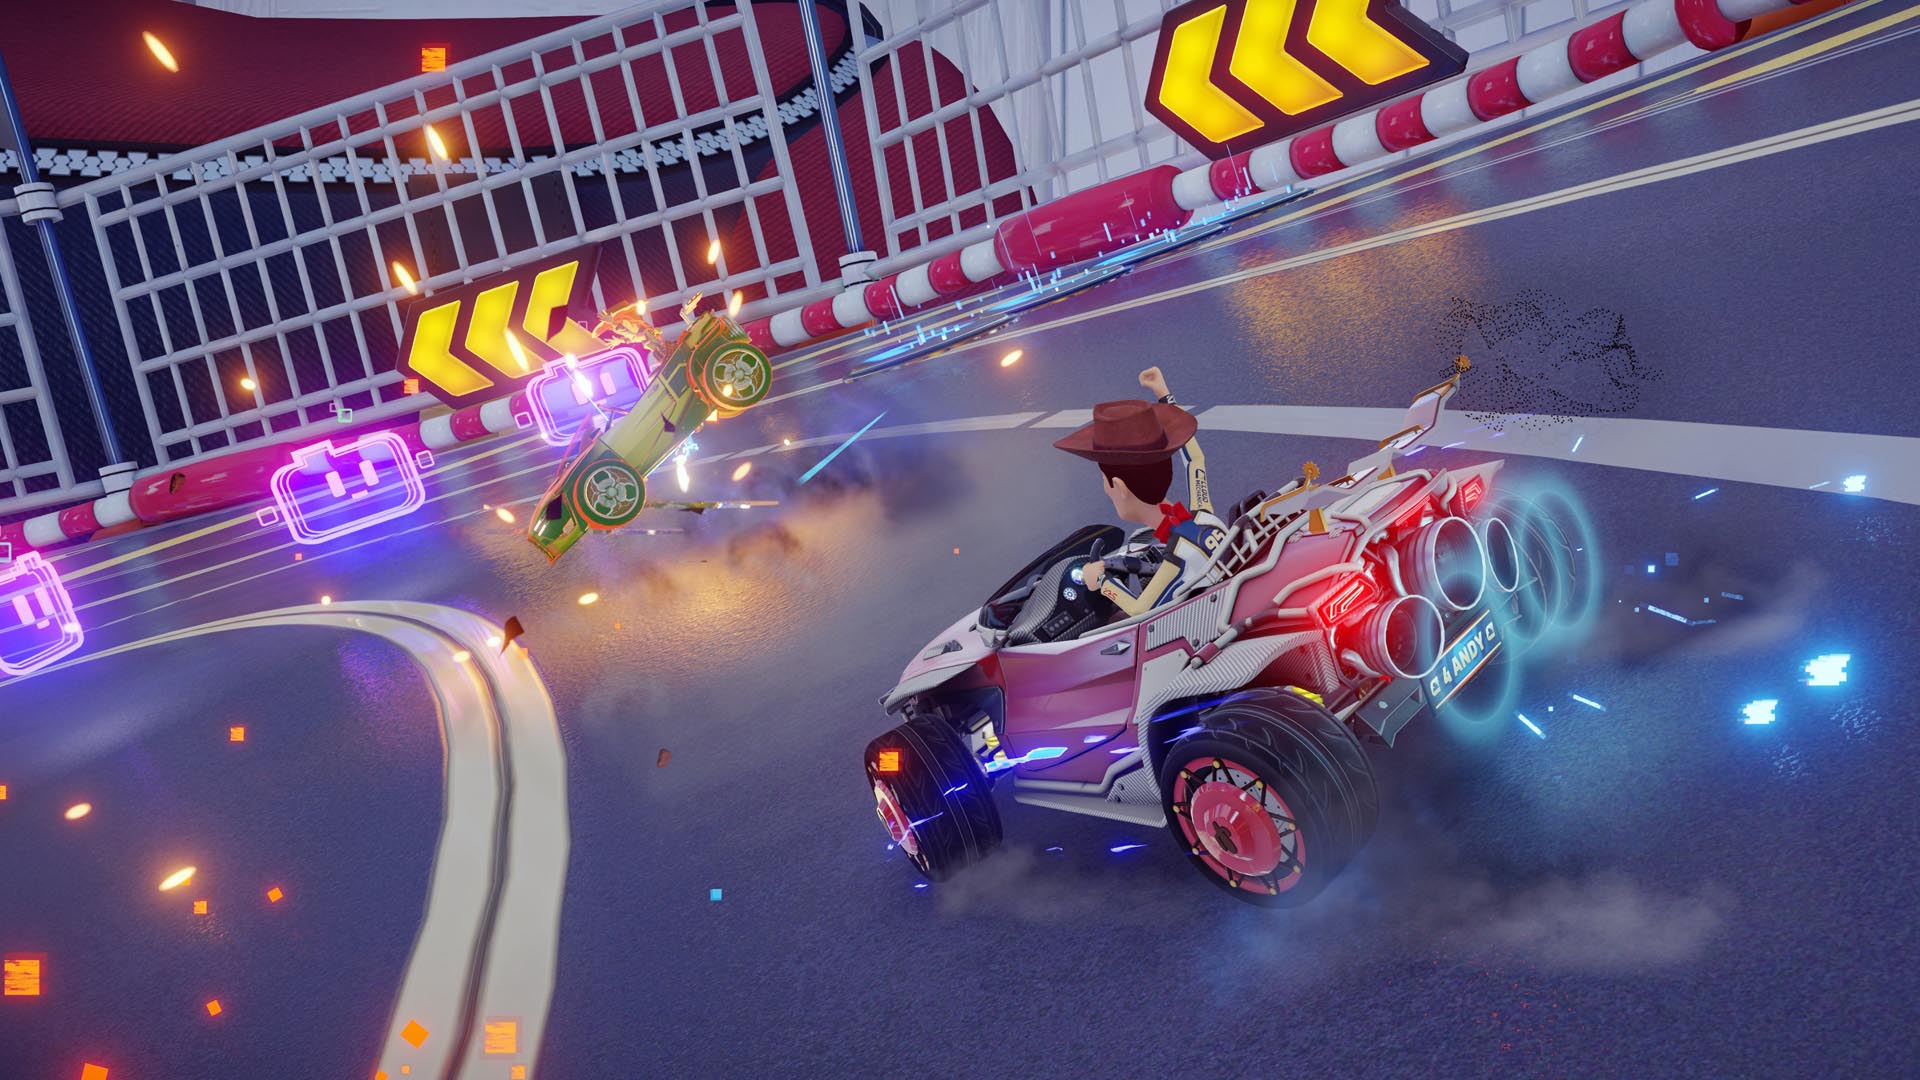 Disney Speedstorm, jogo de corrida gratuito, é anunciado para o Switch